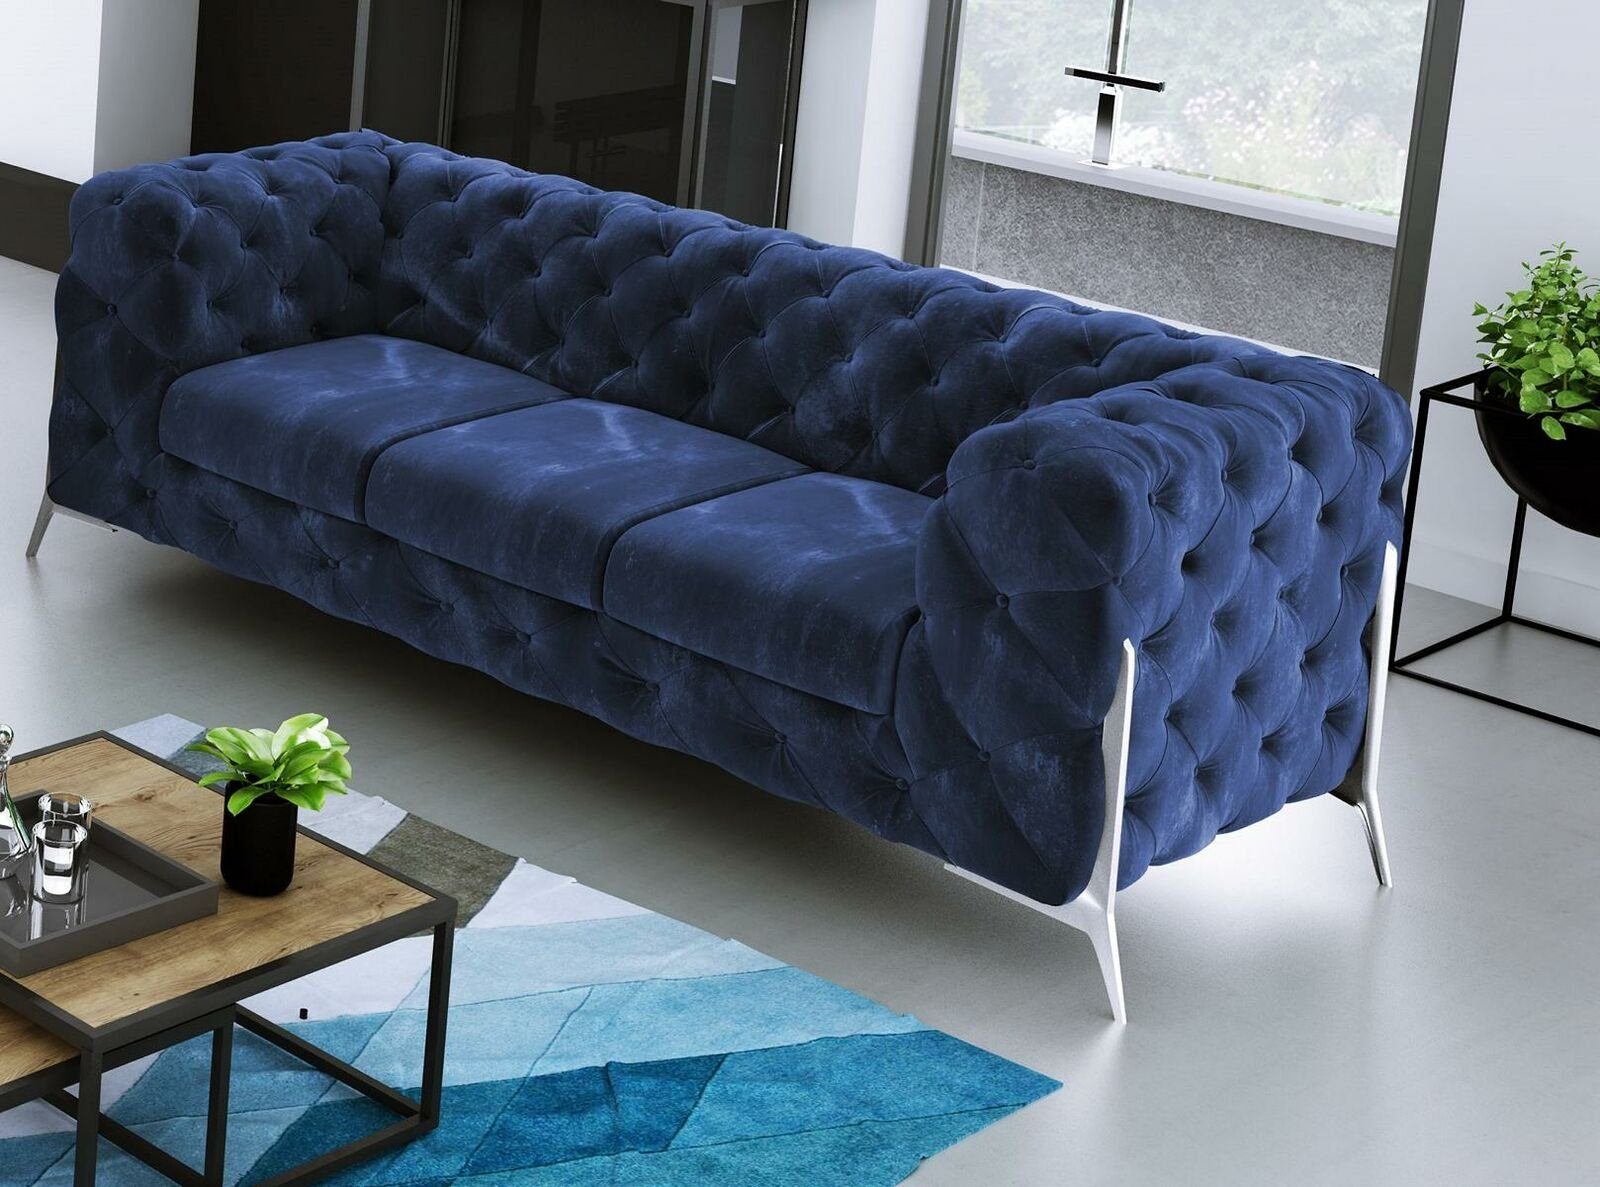 JVmoebel Sofa Moderner Brauner Chesterfield Dreisitzer Luxus Polster Couch Neu, Made in Europe Blau